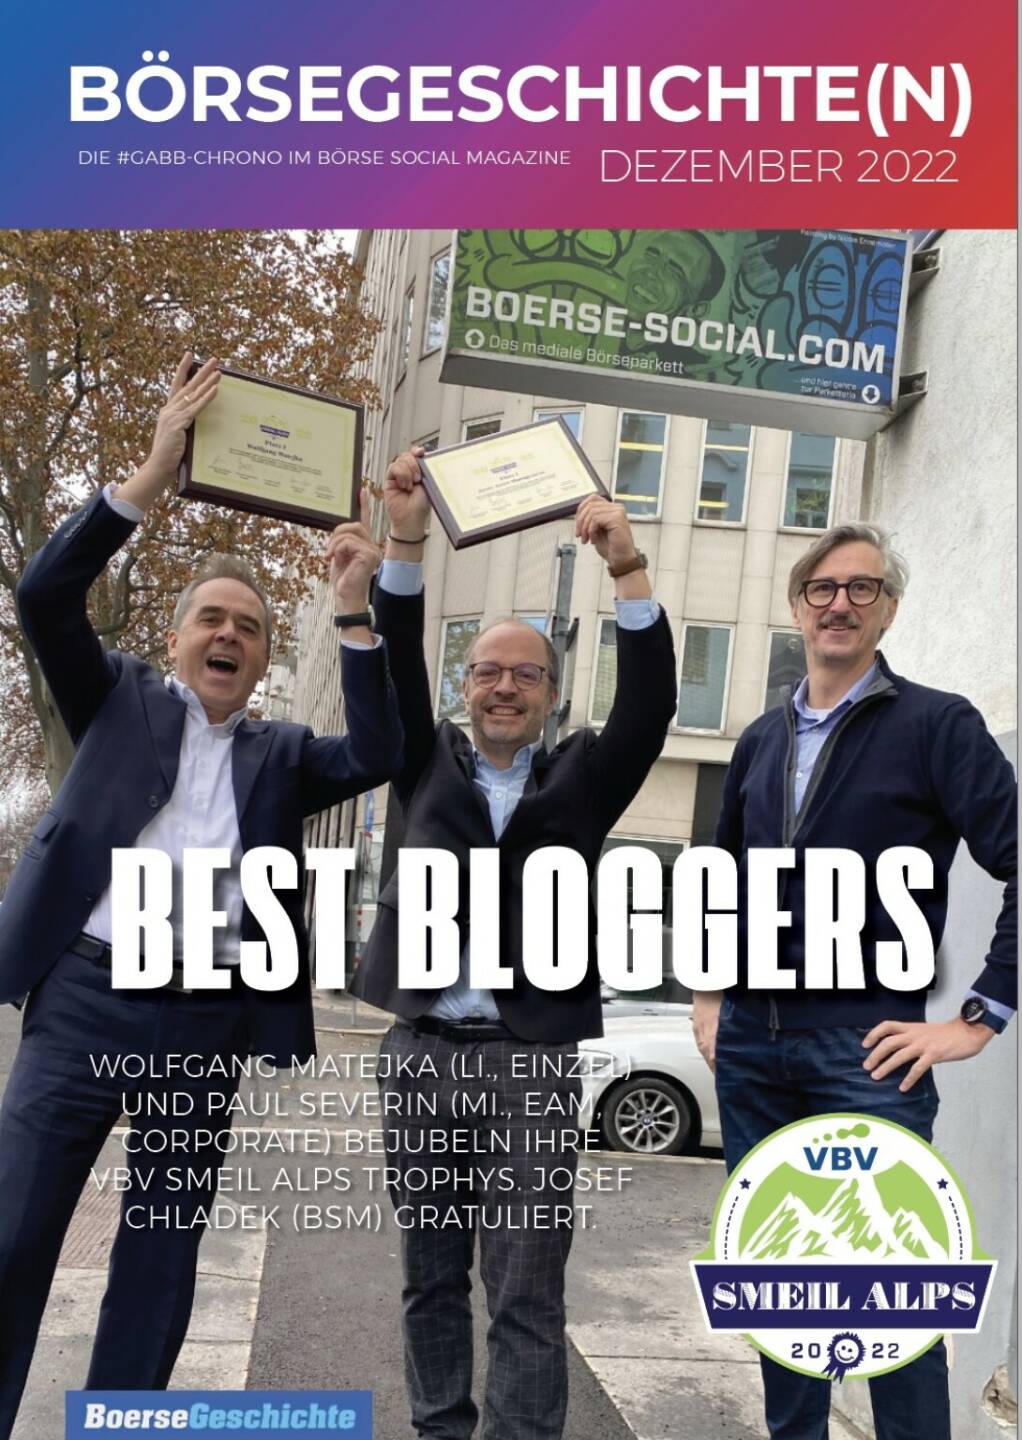 Best Bloggers - WOlfgang Matejka (li., einzel) und Paul Severin (mi., Eam, Corporate) bejubeln ihre VBV Smeil Alps Trophys. Josef Chladek (BSM) gratuliert.